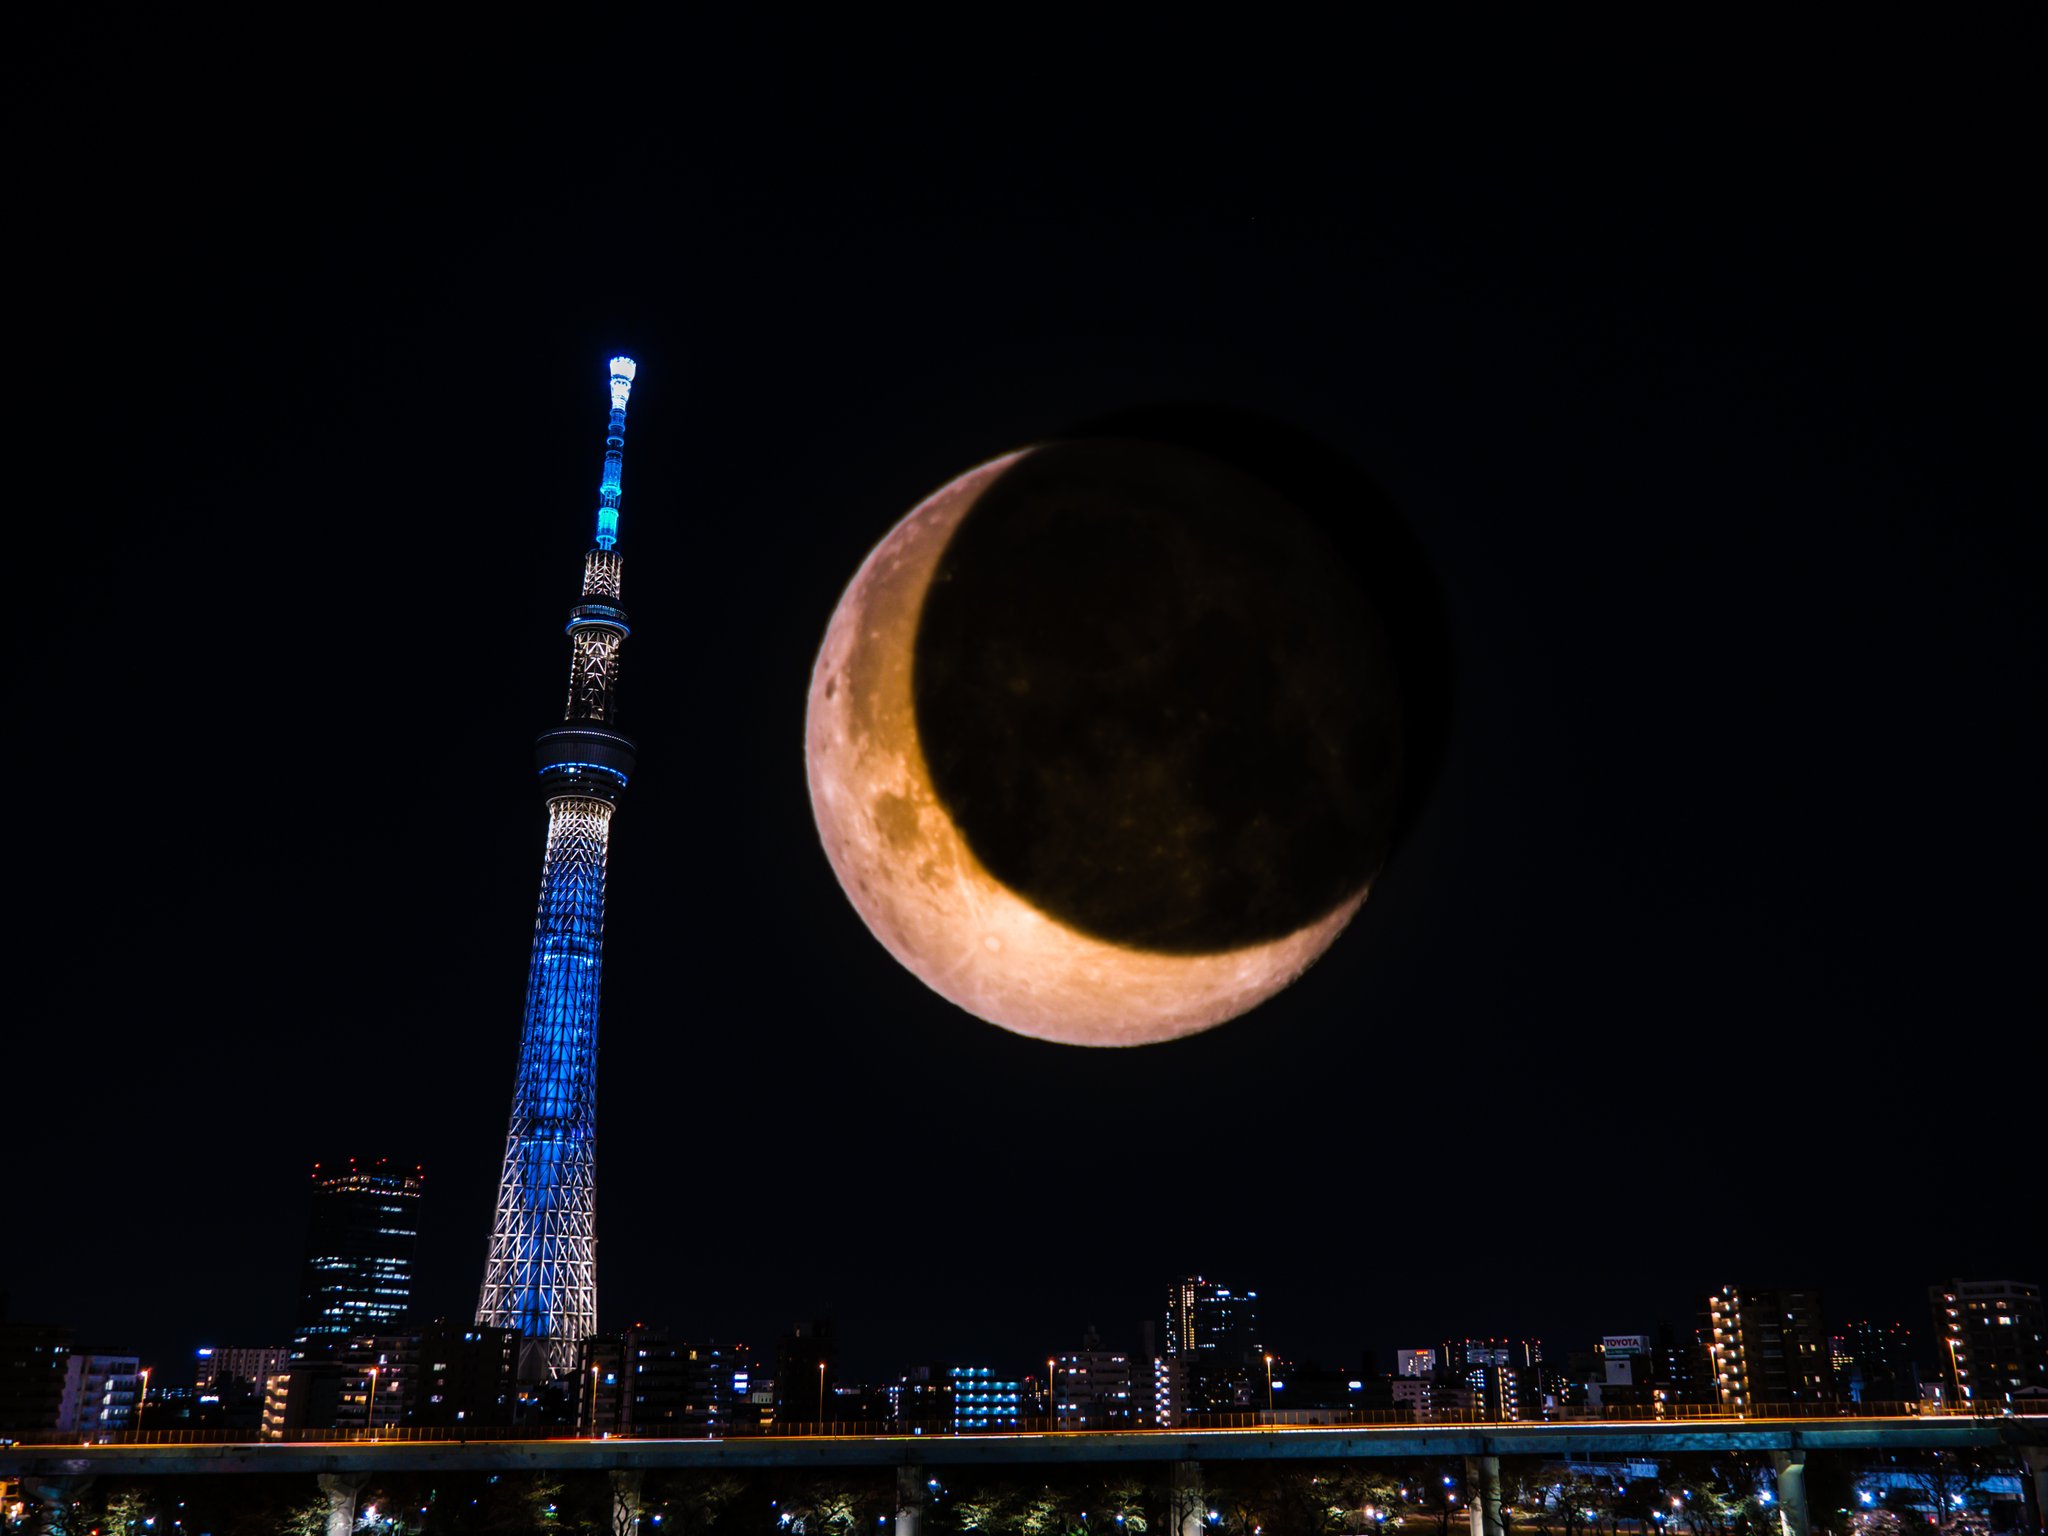 Twitter 上的 樹さん ありえない風景 東京スカイツリーとでっかい月のコラボレーションしてみたかったんだよね Www Em1x ファインダー越しの私の世界 写真好きな人とつながりたい 写真好きな人と繋がりたい 三日月 夜景 東京スカイツリー T Co